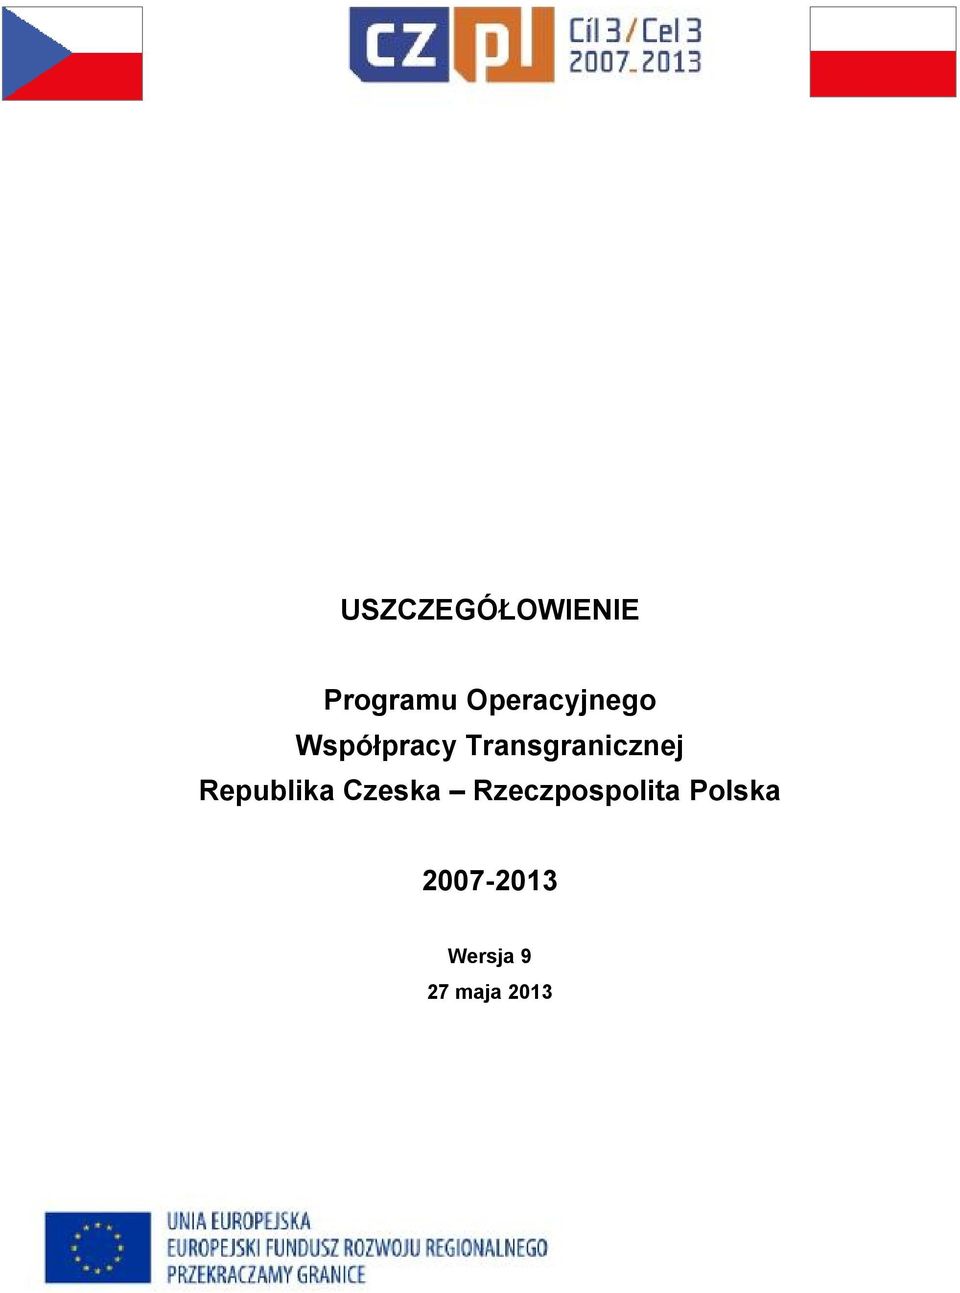 Transgranicznej Republika Czeska